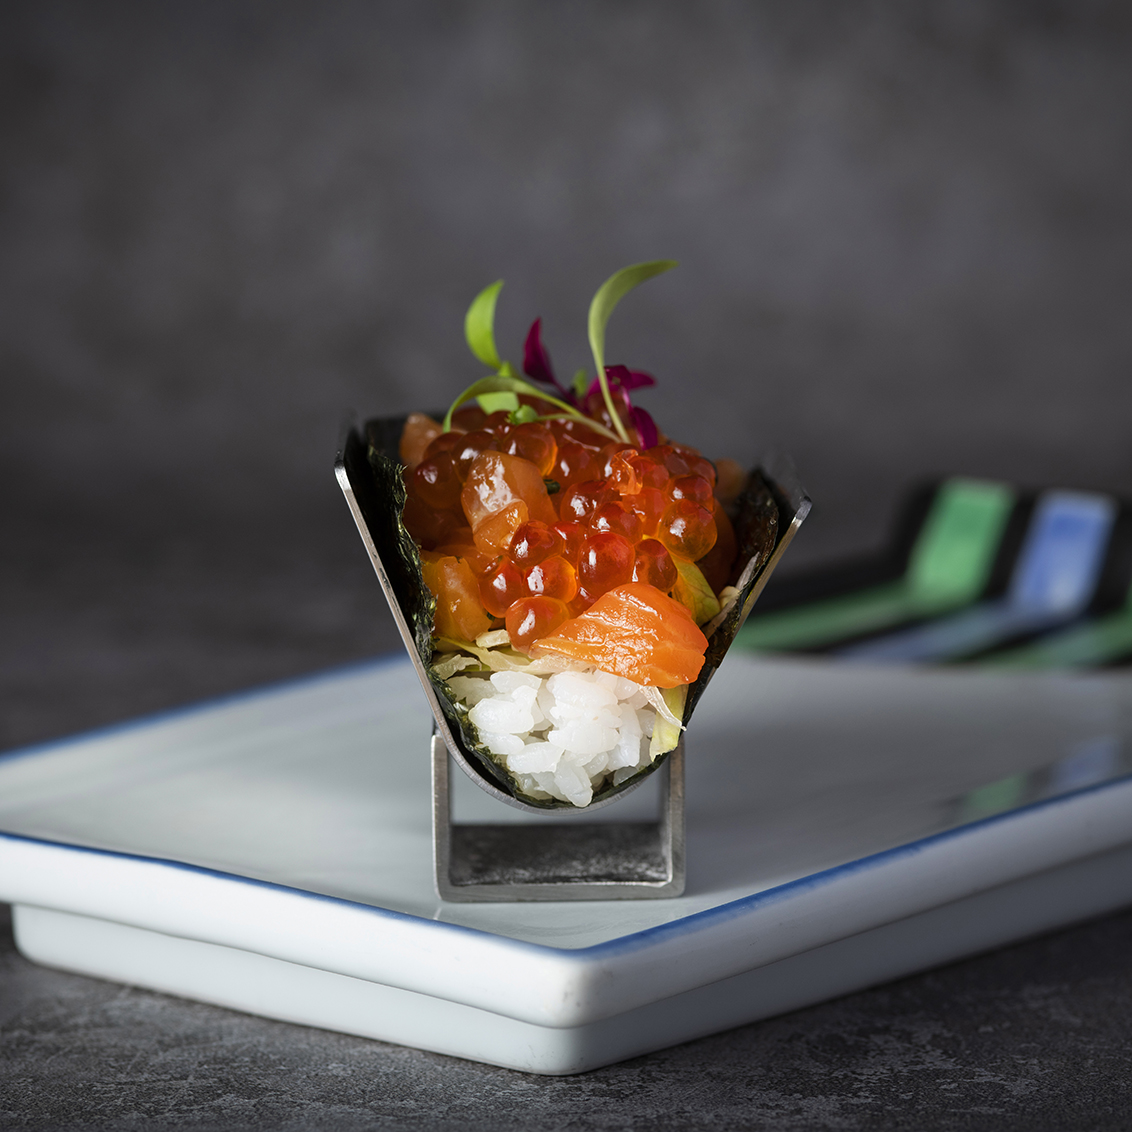 全新開幕遠東Cafe 自助餐廳 日式料理餐檯還提供多種現做手卷 饕客可任選不同口味 圖為醃製鮭魚手卷